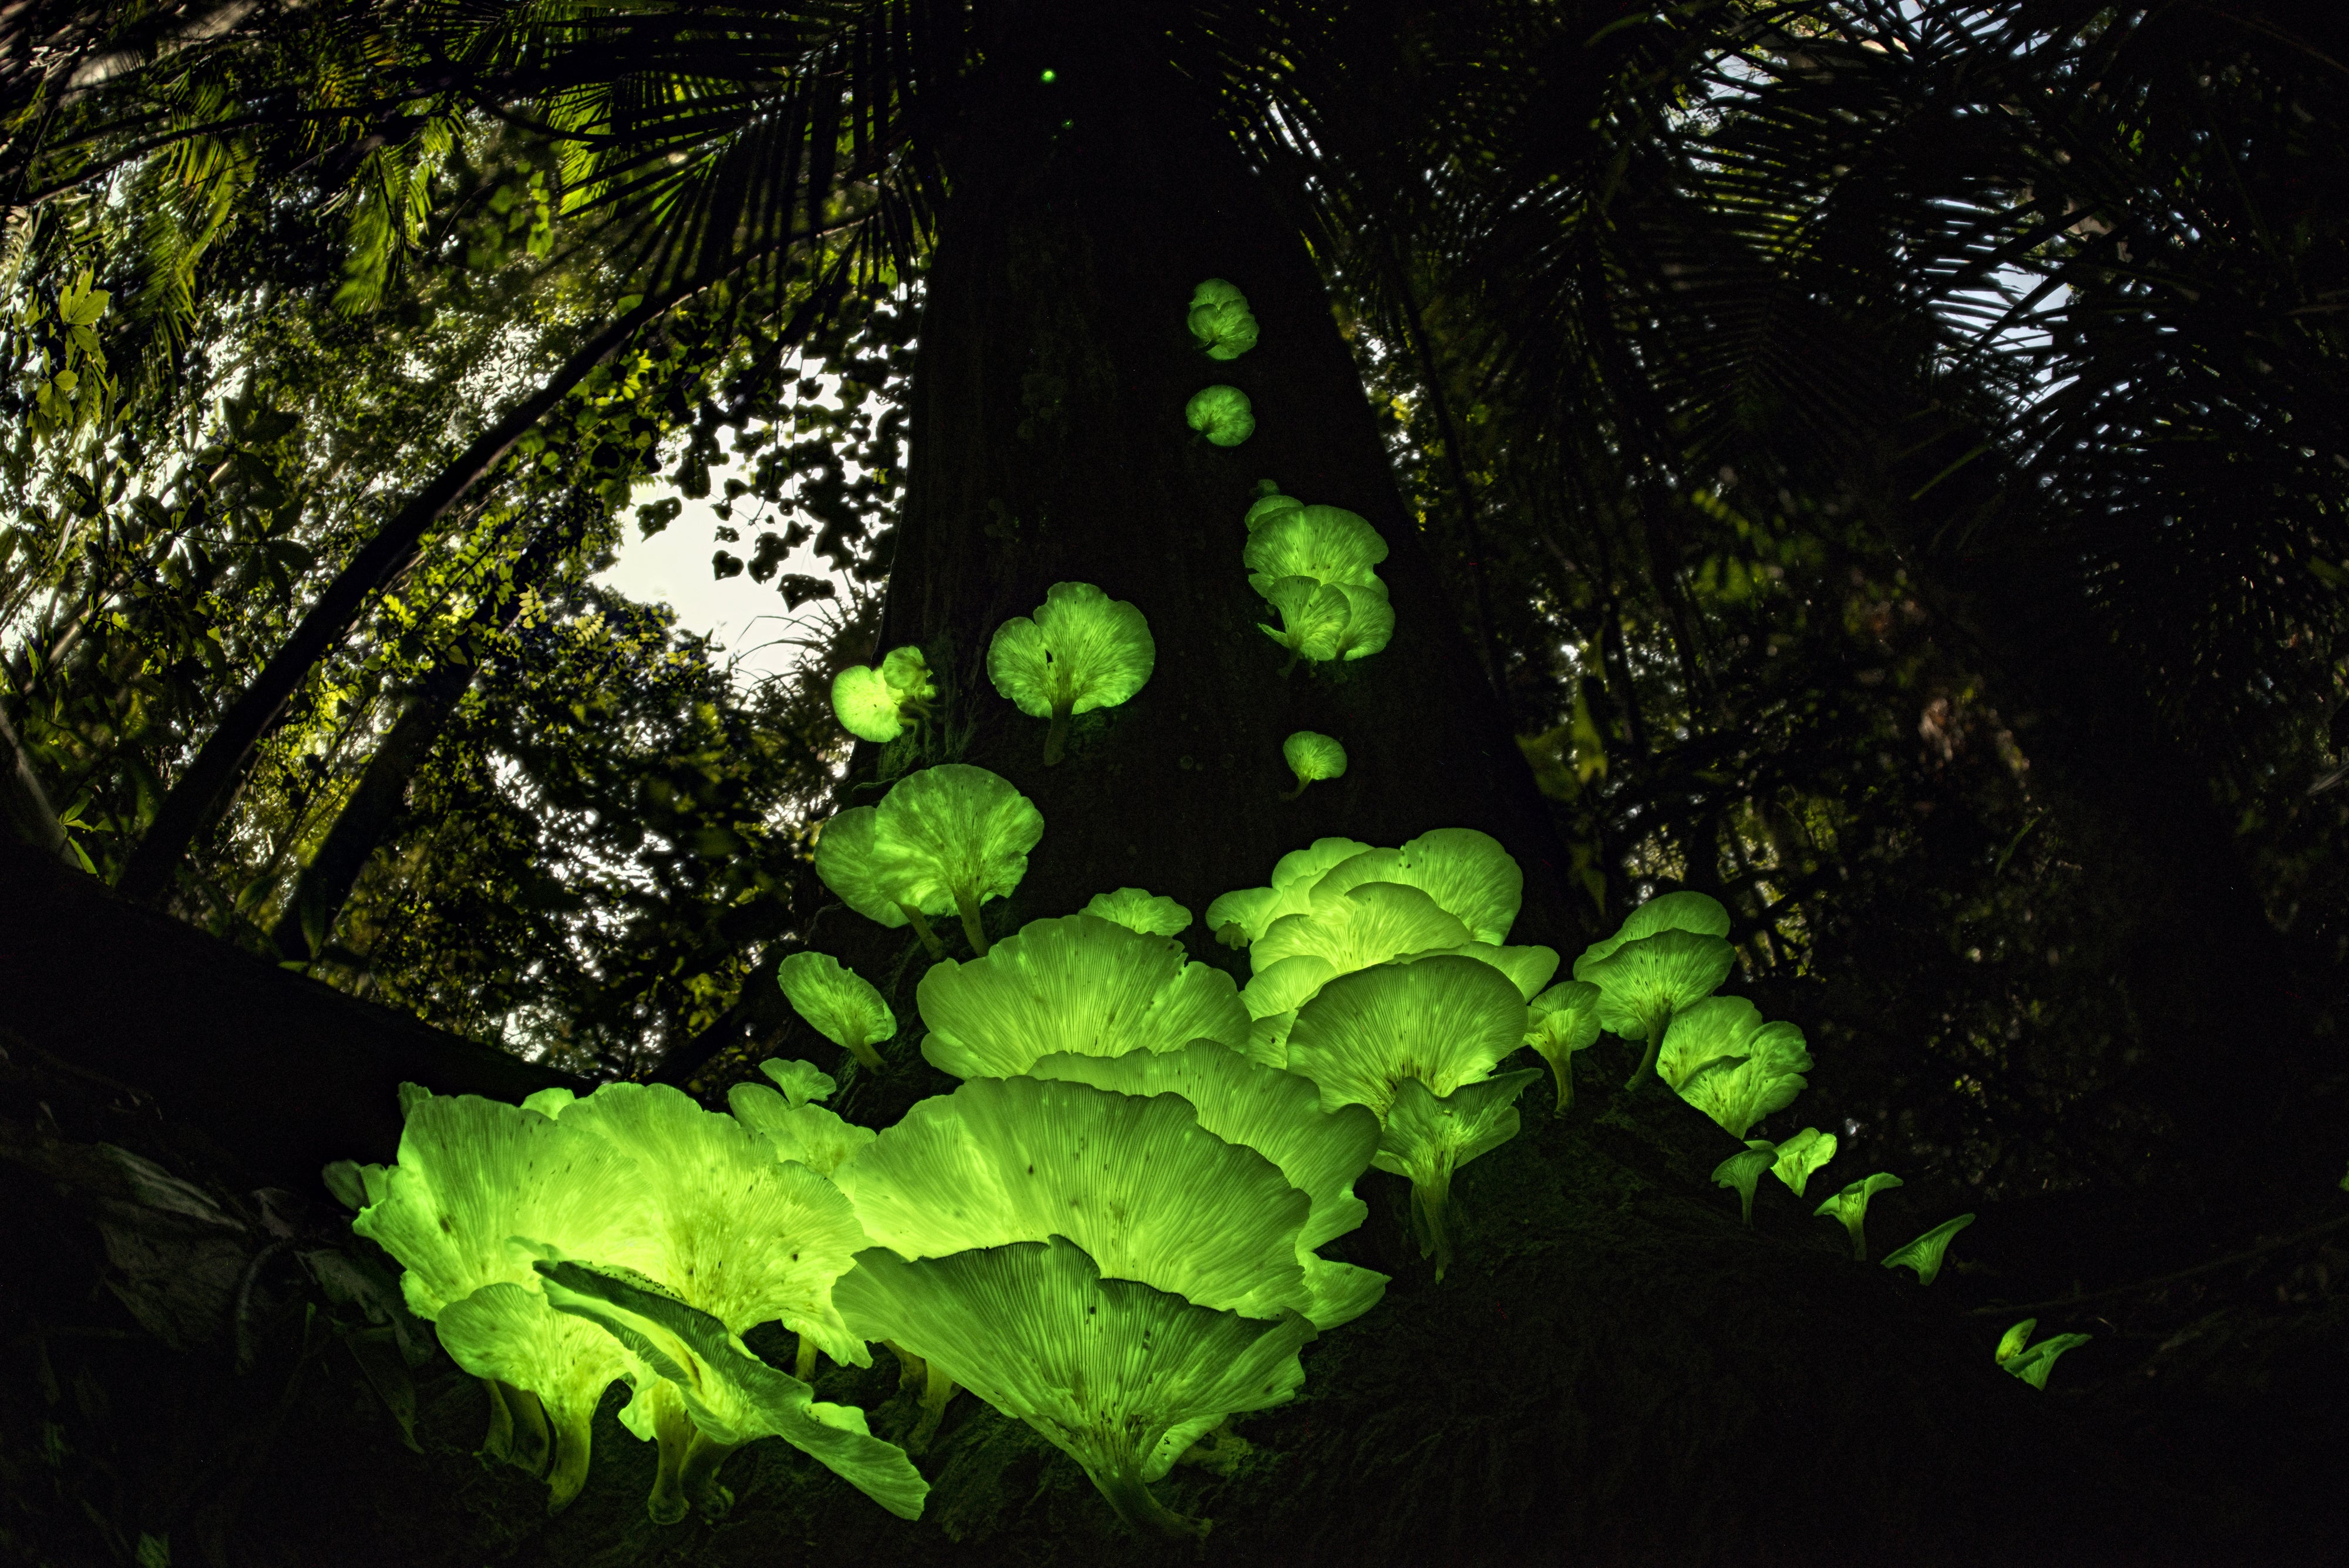 Mushroom magic by Juergen Freund (Juergen Freund/Wildlife Photographer of the Year)